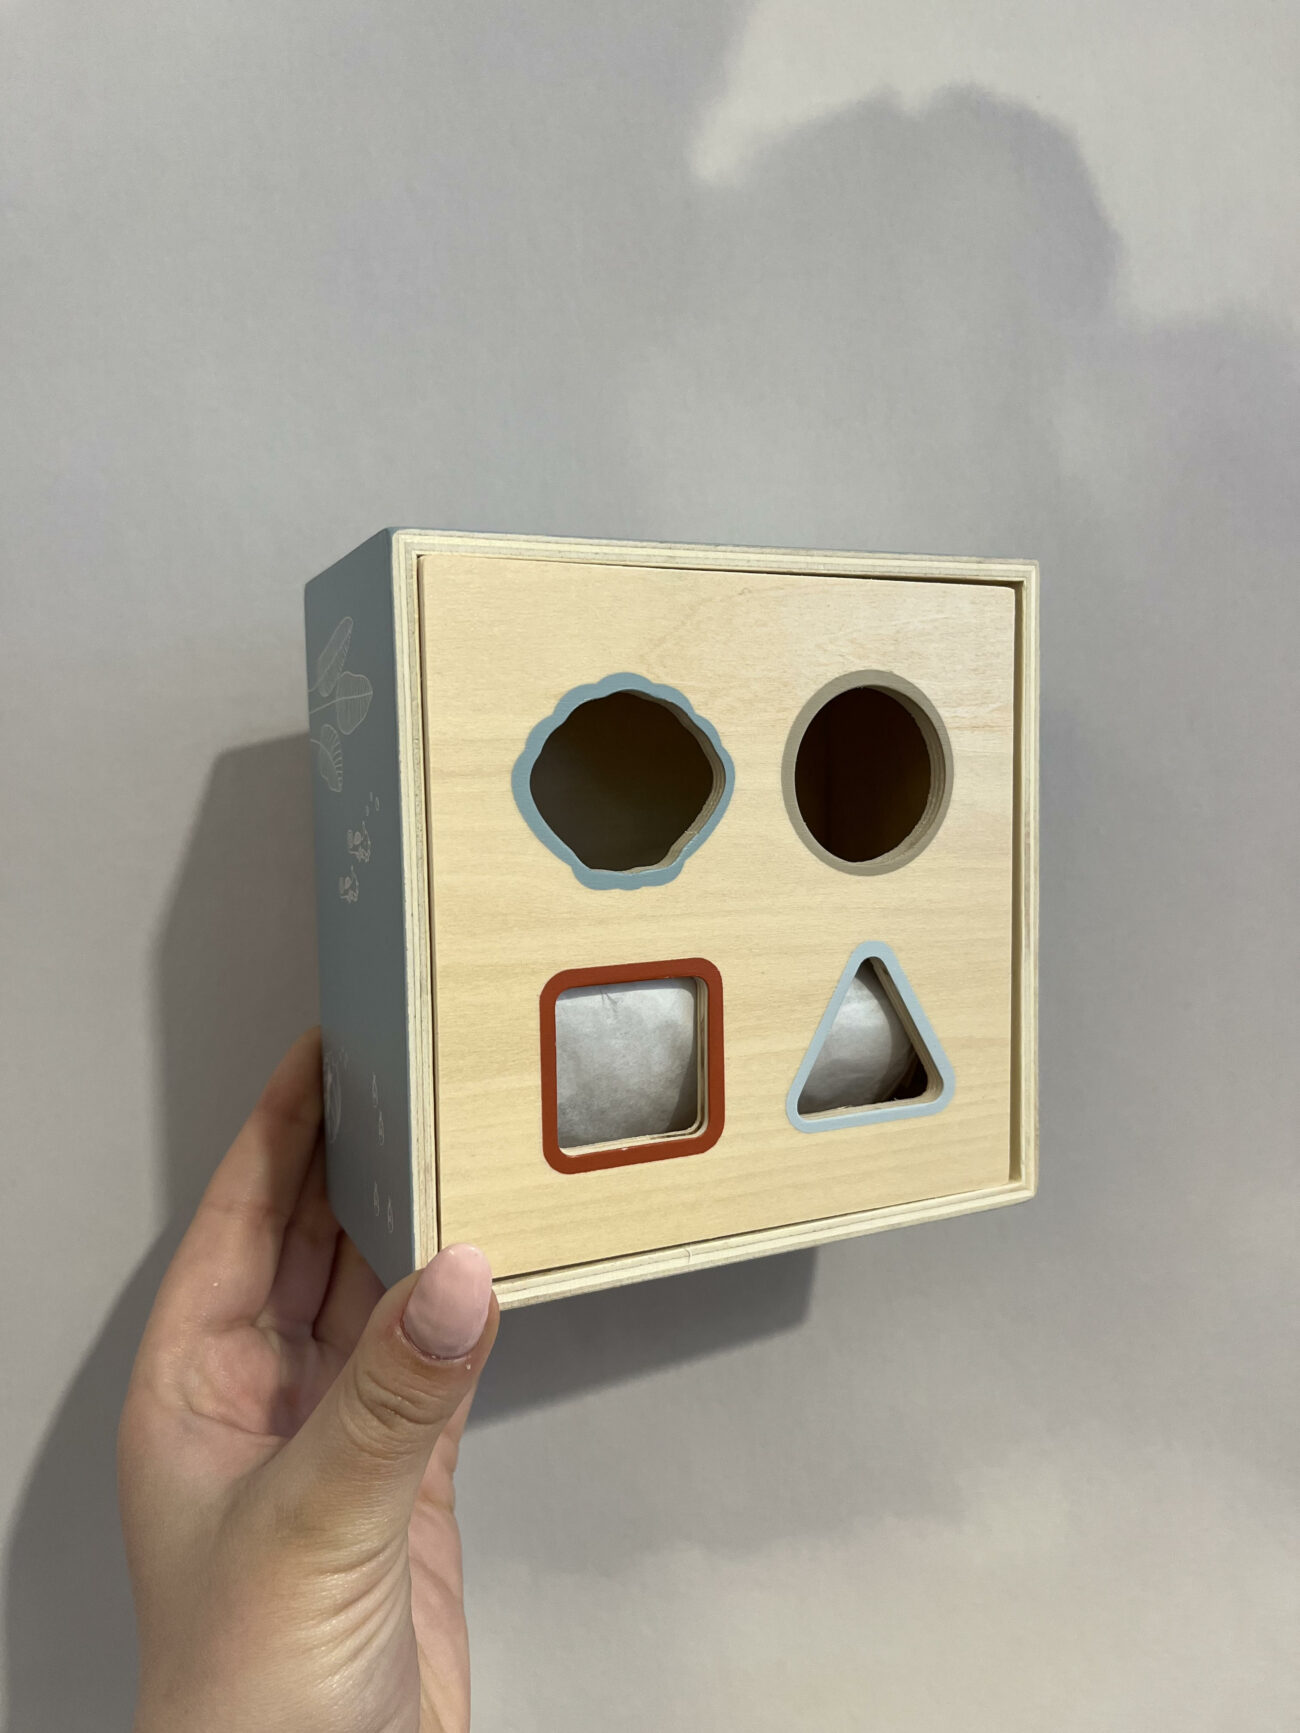 Boîte à formes en bois